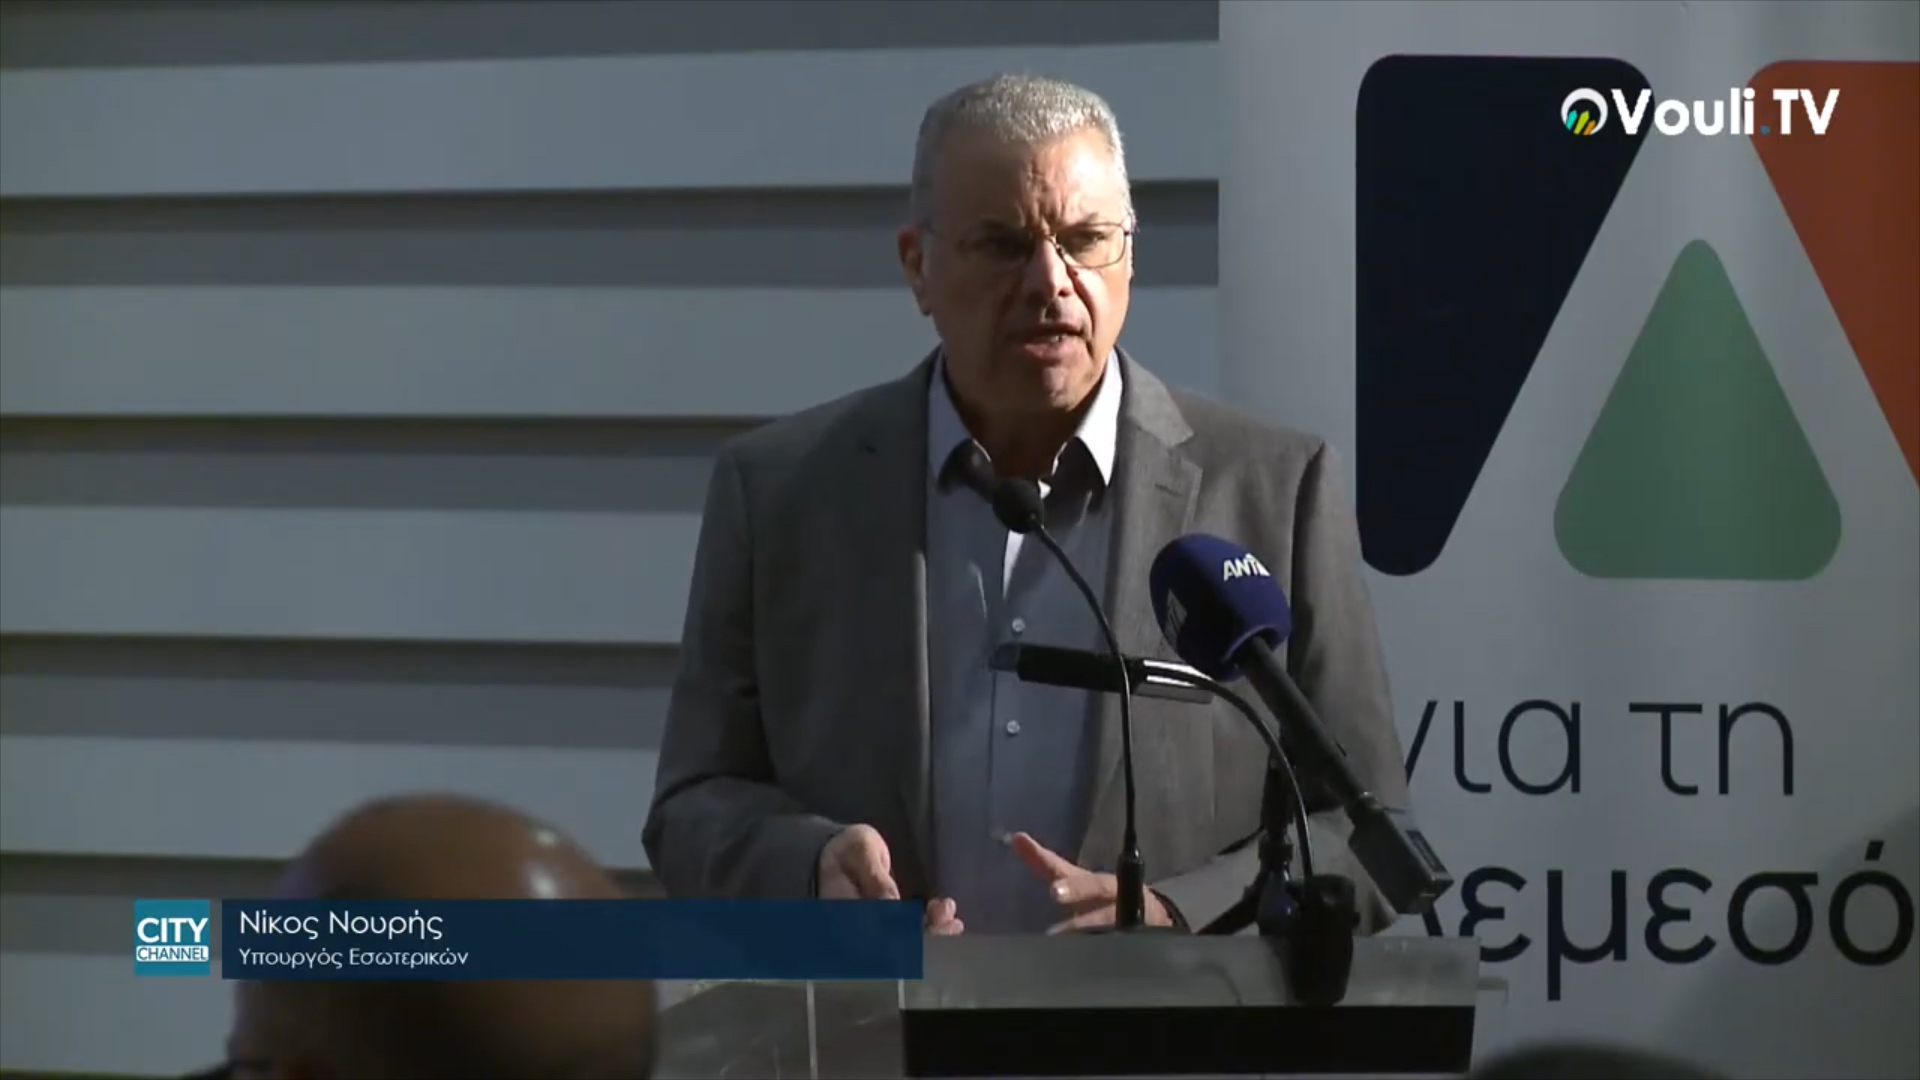 Νίκος Νουρής, Υπουργός Εσωτερικών – Ανοιχτή Συζήτηση για τη Μεταρρύθμιση της Τοπικής Αυτοδιοίκησης 26/11/2021